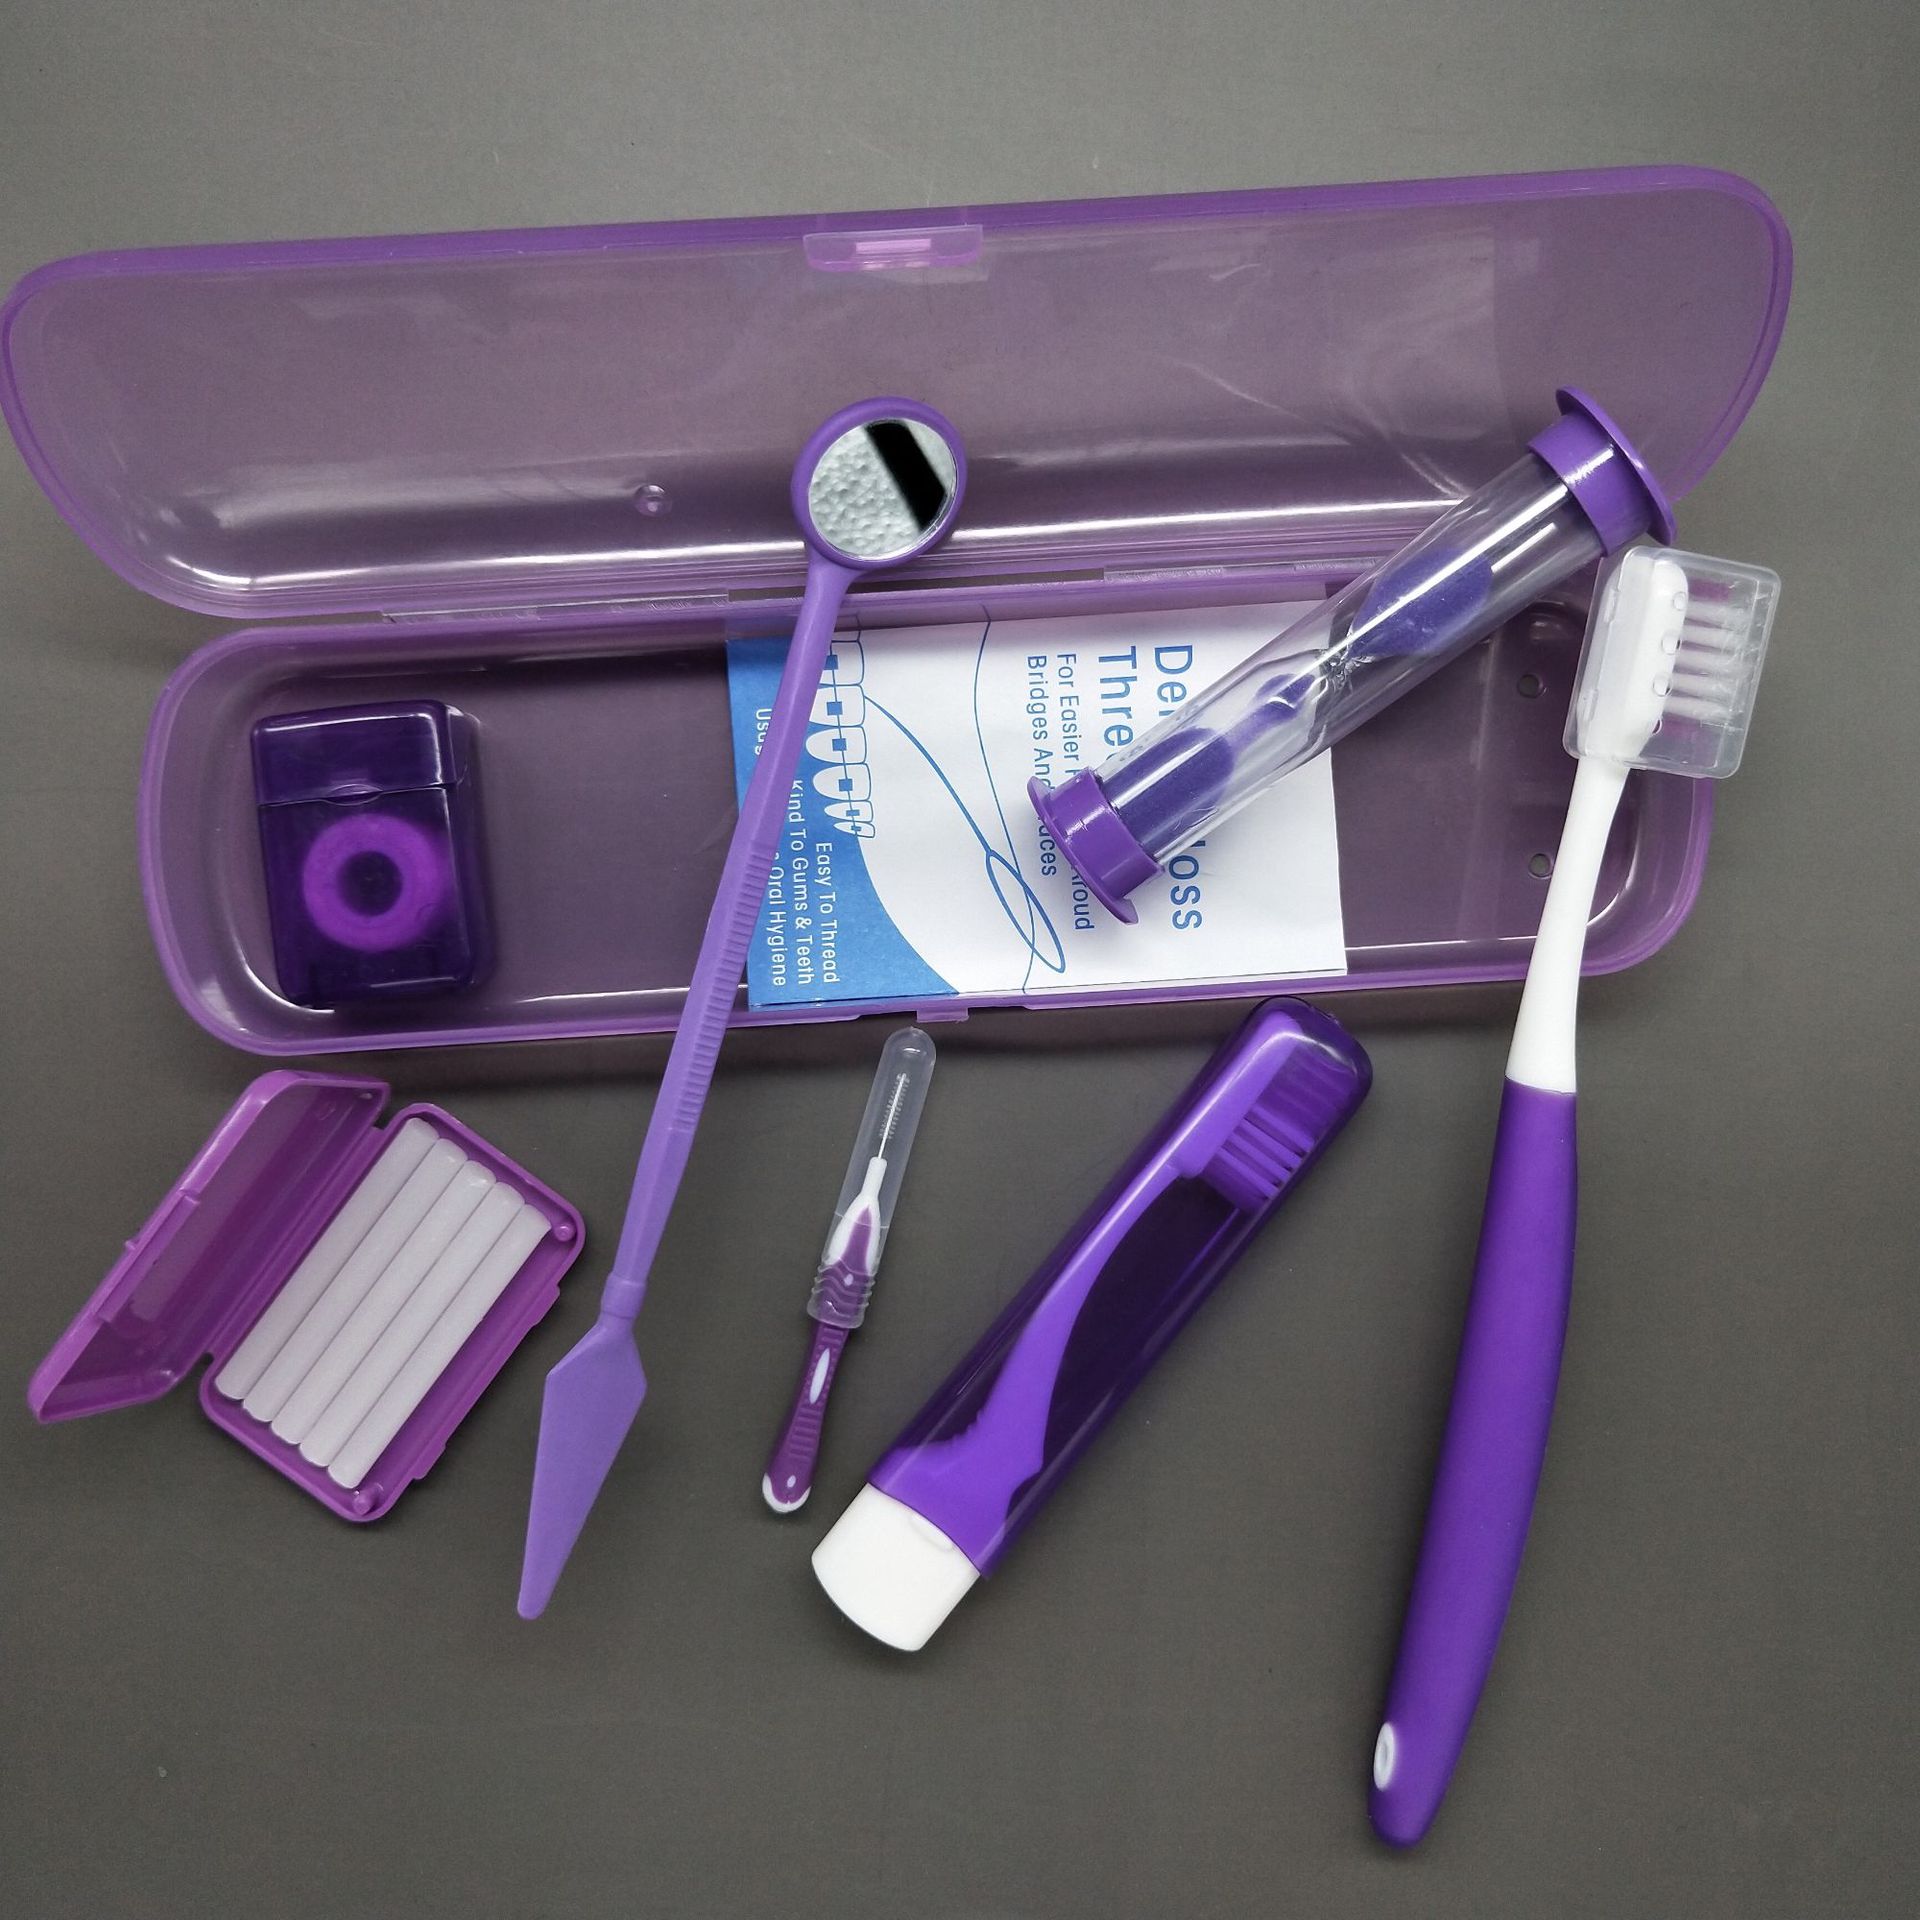 orthodontic toothbrush kit  hard case